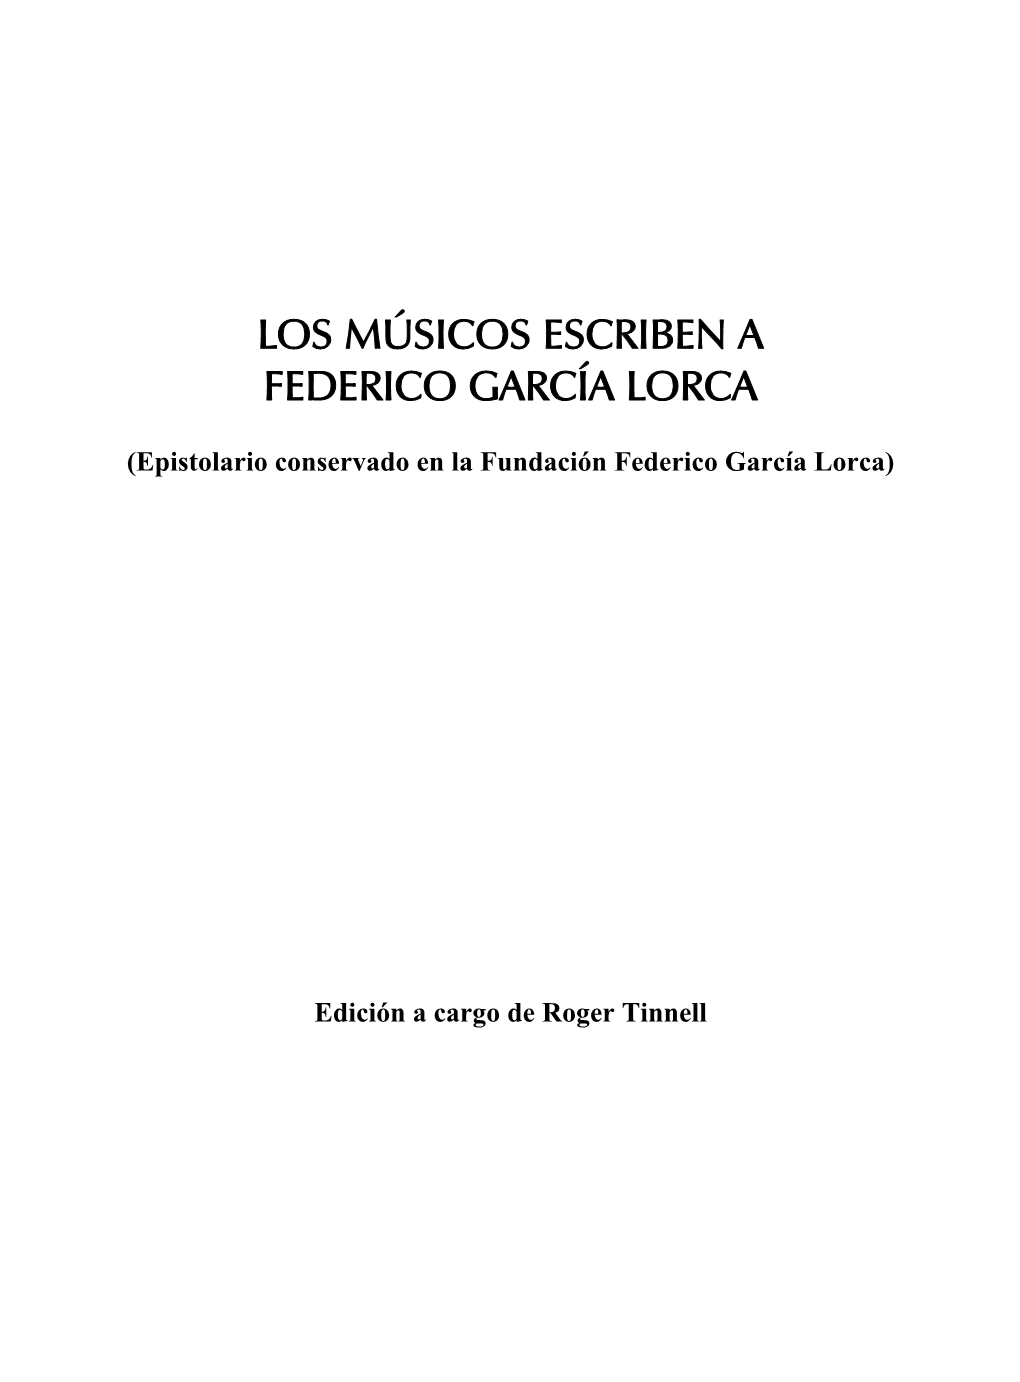 Los Músicos Escriben a Federico García Lorca